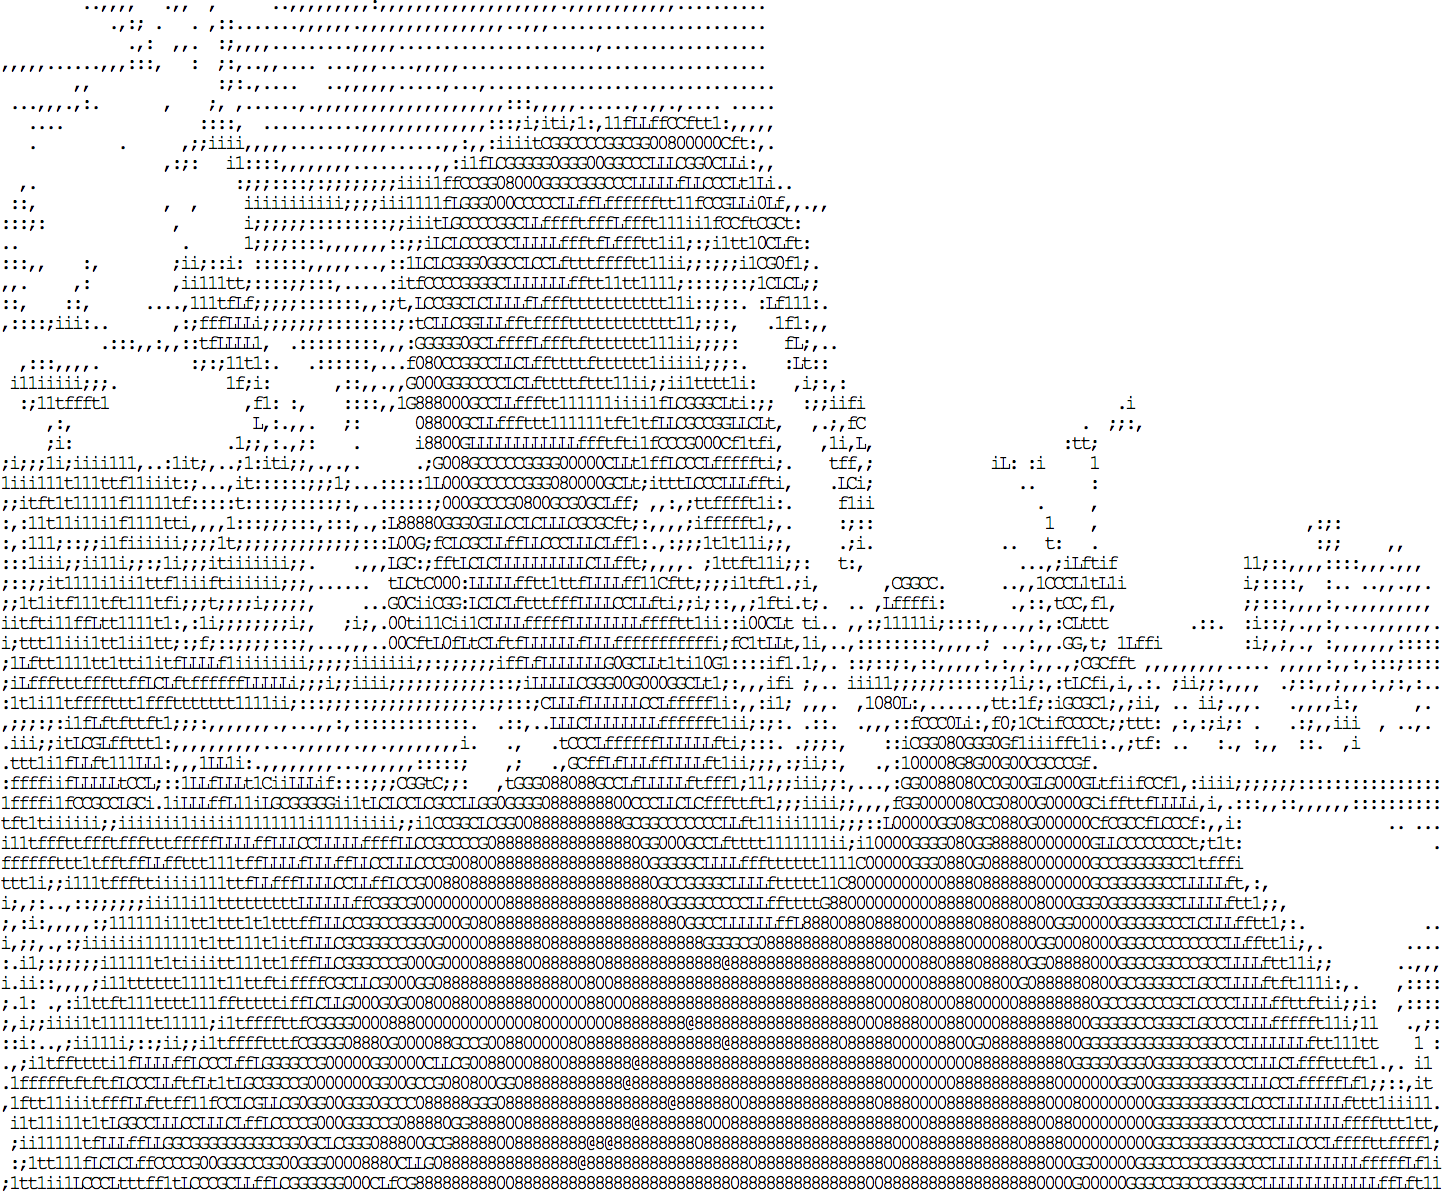 Gambar ASCII yang dihasilkan oleh idevelop.ro/ascii-camera